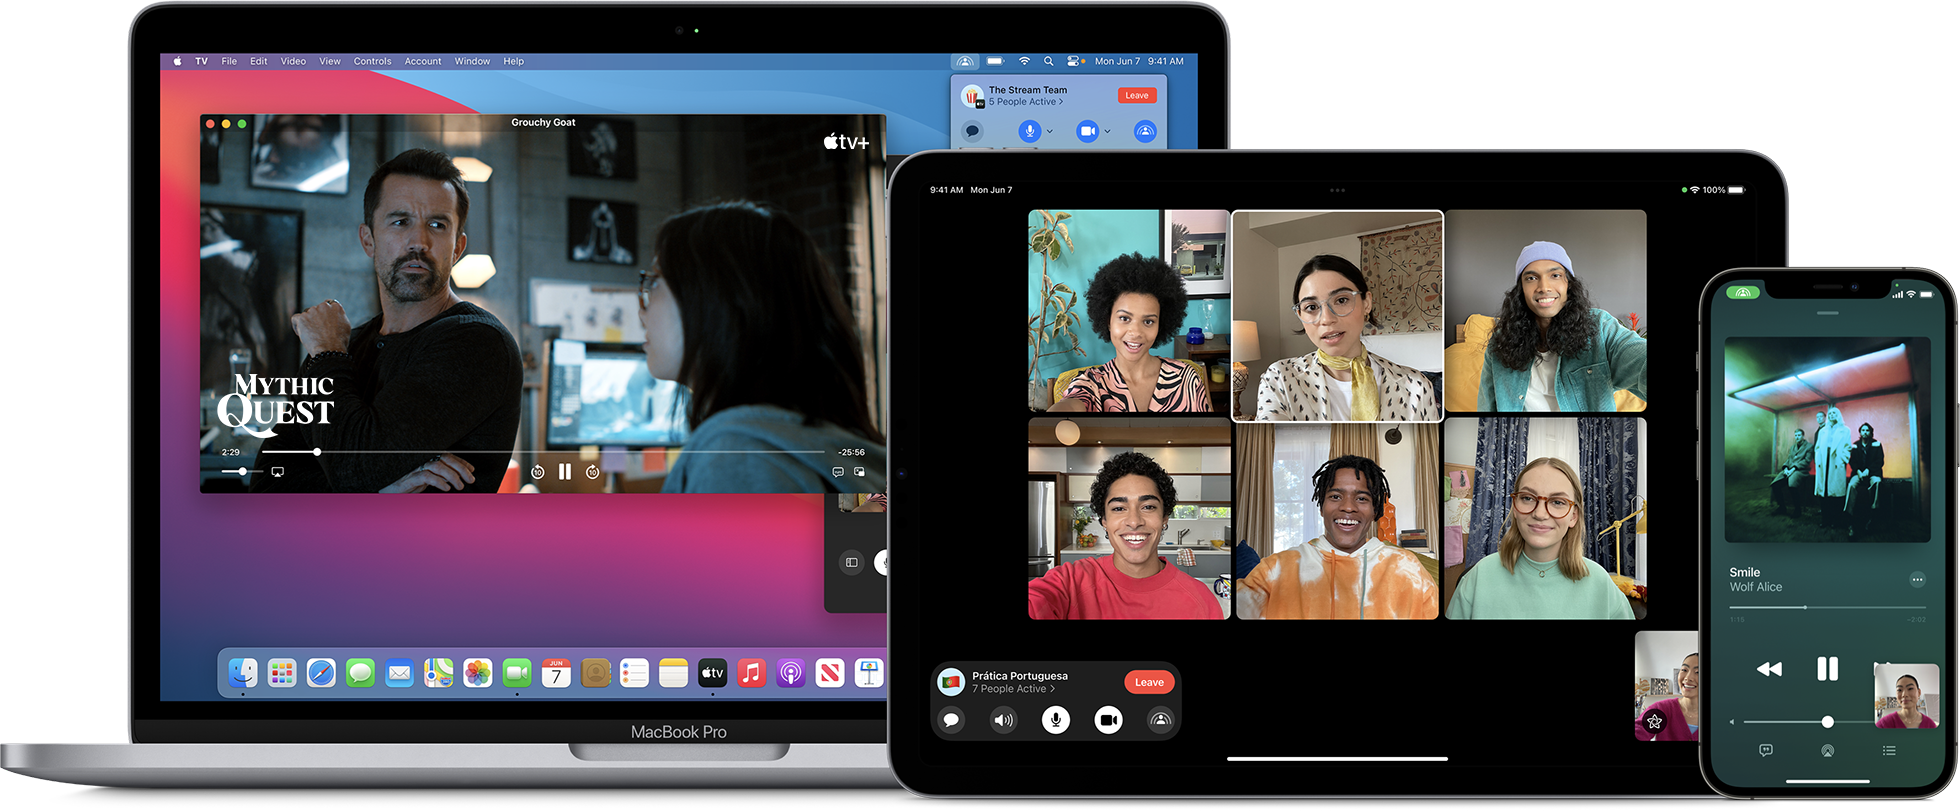 3つの異なるSharePlayアクティビティが表示されているMacBook Pro、iPad、iPhone